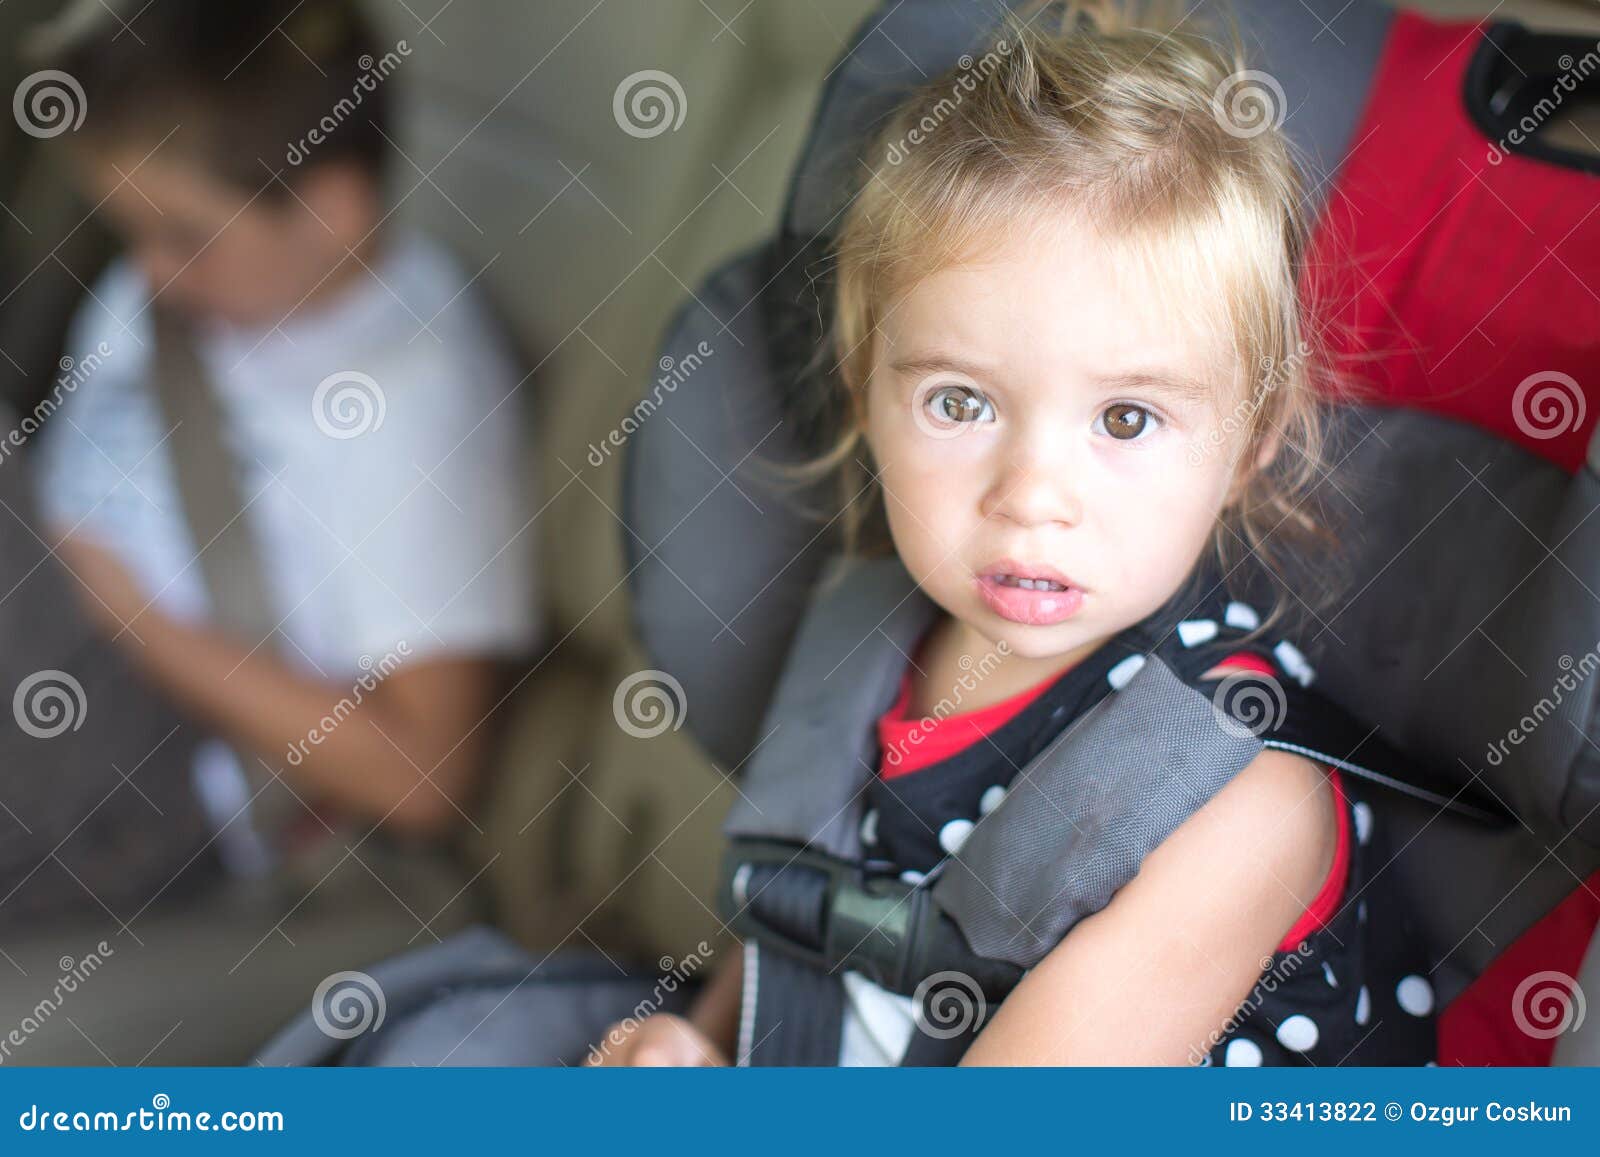 Petite Fille Dans Un Siège De Voiture Portrait Regardant La Caméra Photo  stock - Image du automobile, adorable: 252539424